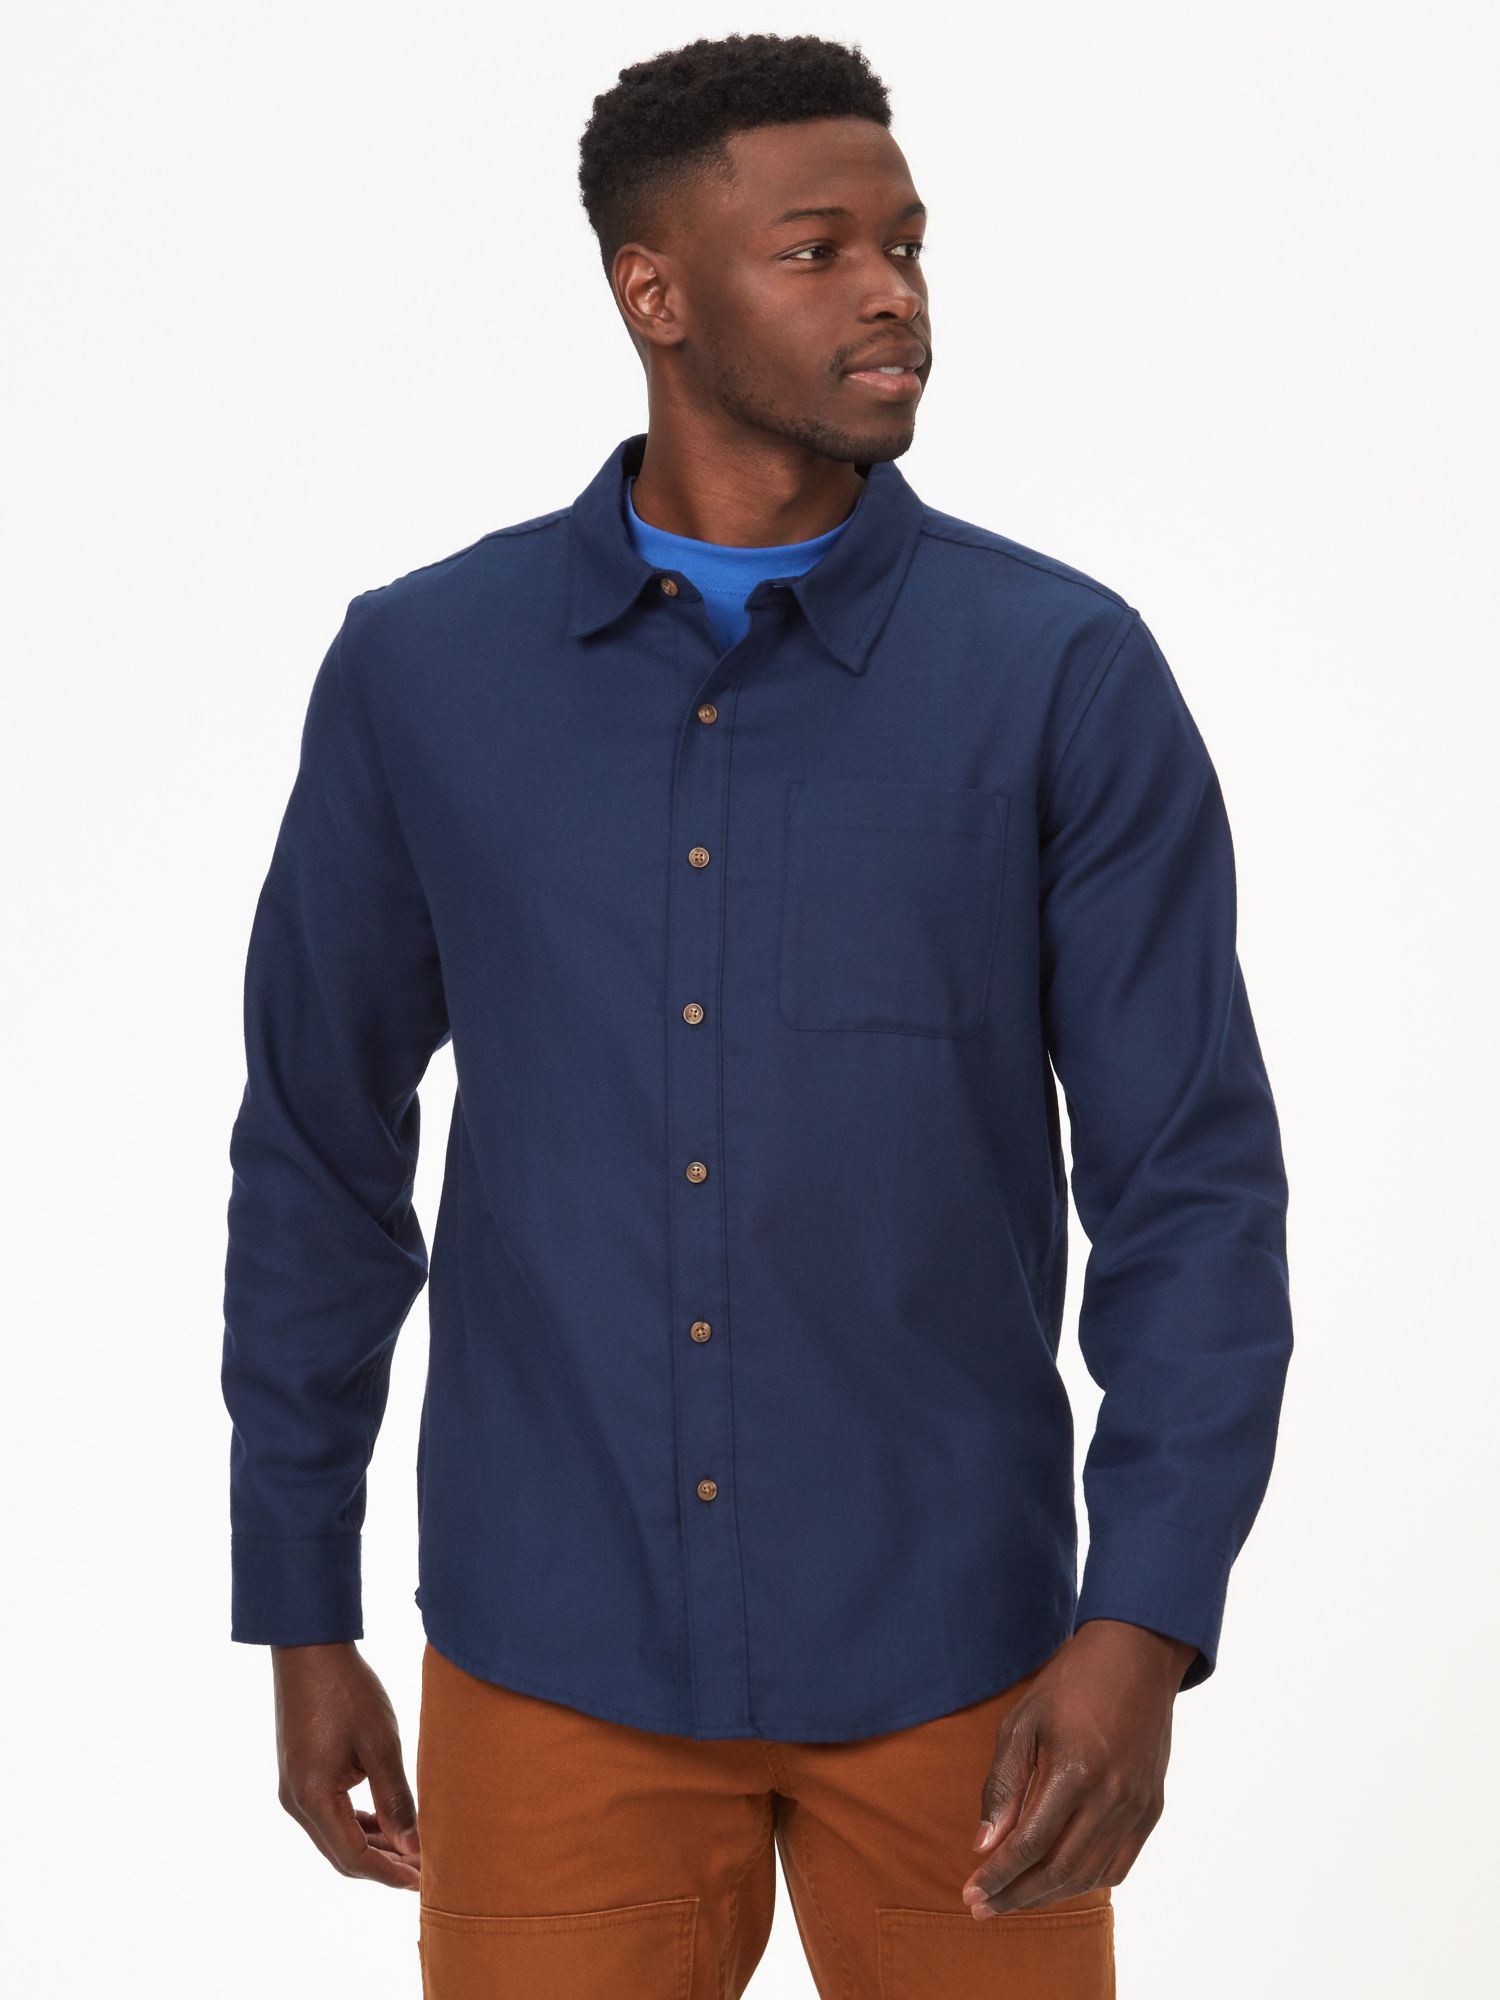 Men's Fairfax Lightweight Flannel Shirt | Marmot